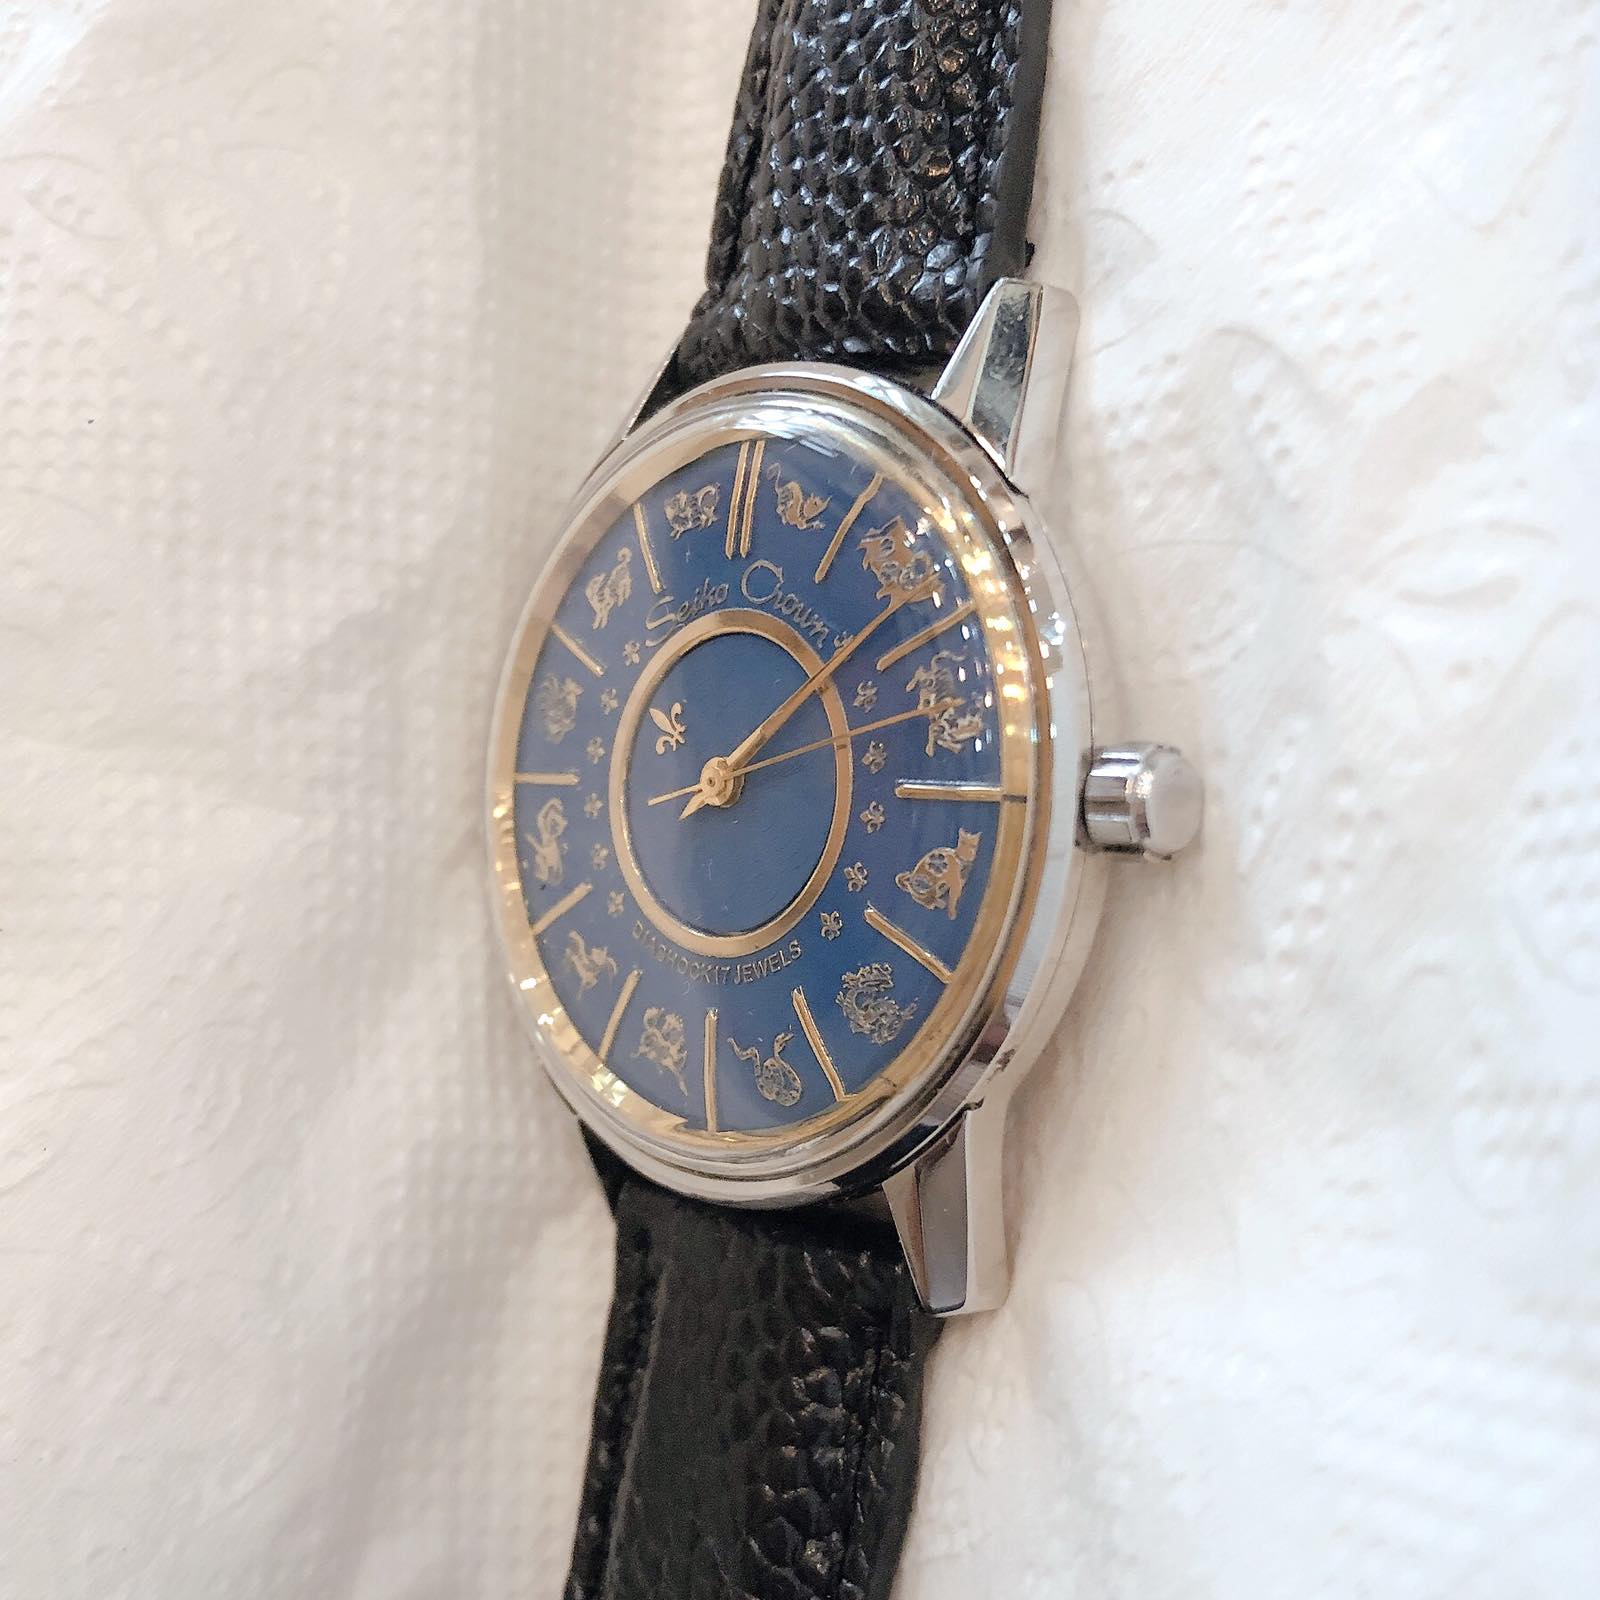 Đồng hồ cổ Seiko Crown kim đĩa bản đặc biệt 12 con giáp chính hãng nhật bản 